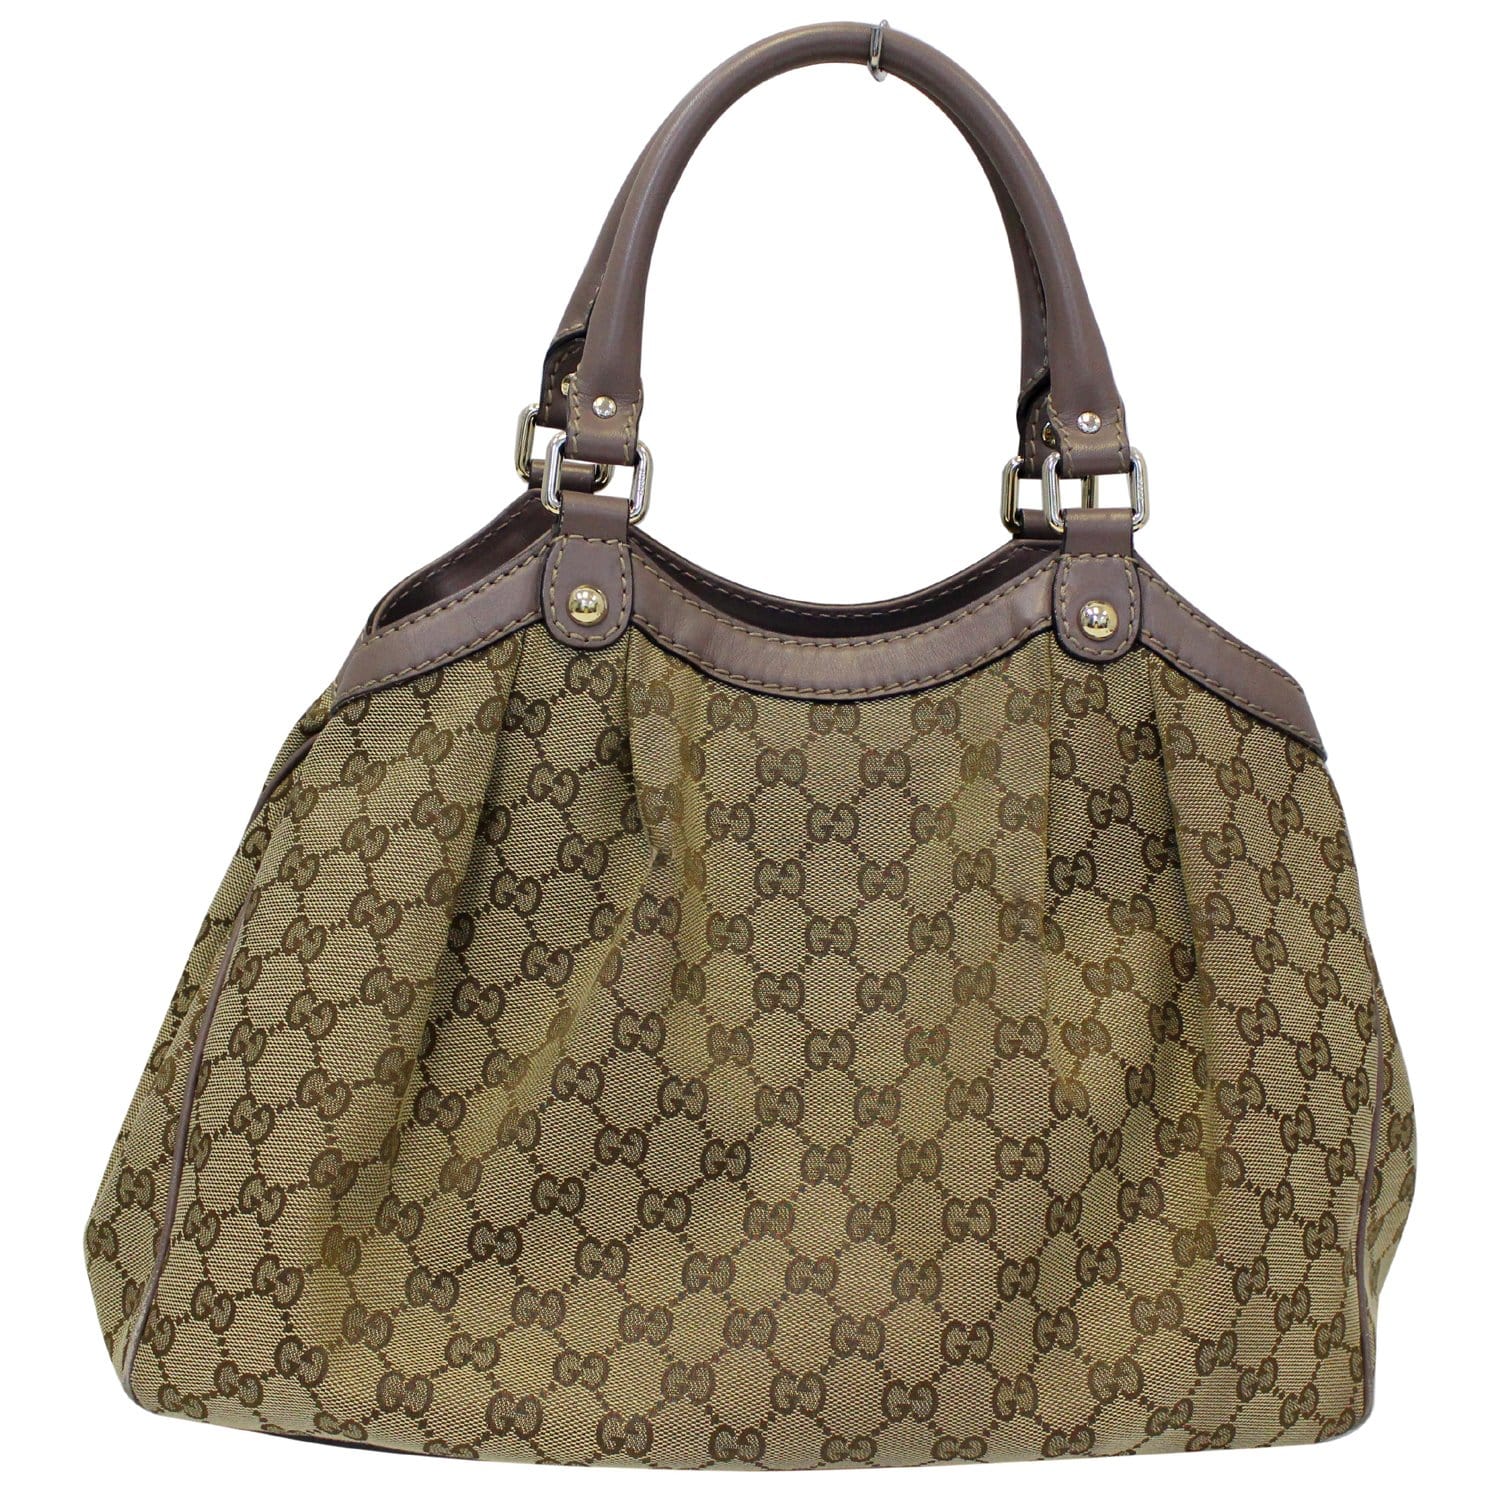 Gucci Gucci Sukey Medium GG Canvas & Black Leather Tote Bag